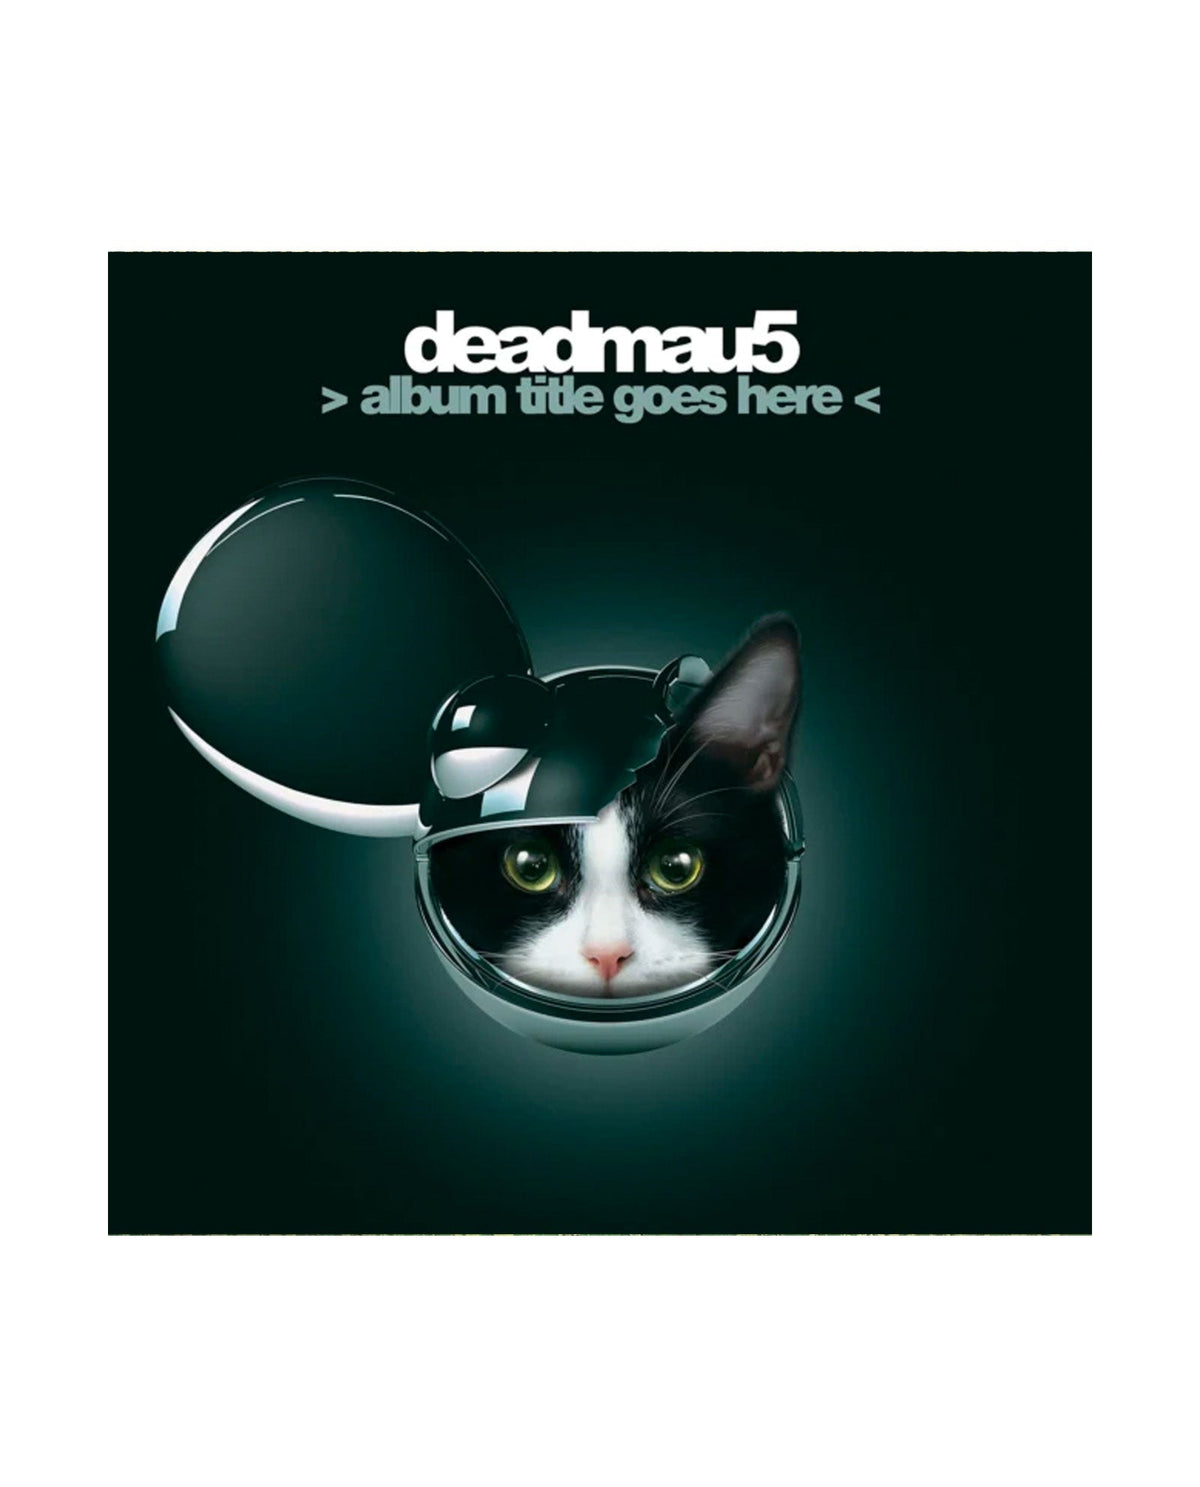 Deadmau5 - 2LP Vinilo Azul Transparente Album Title Goes Here